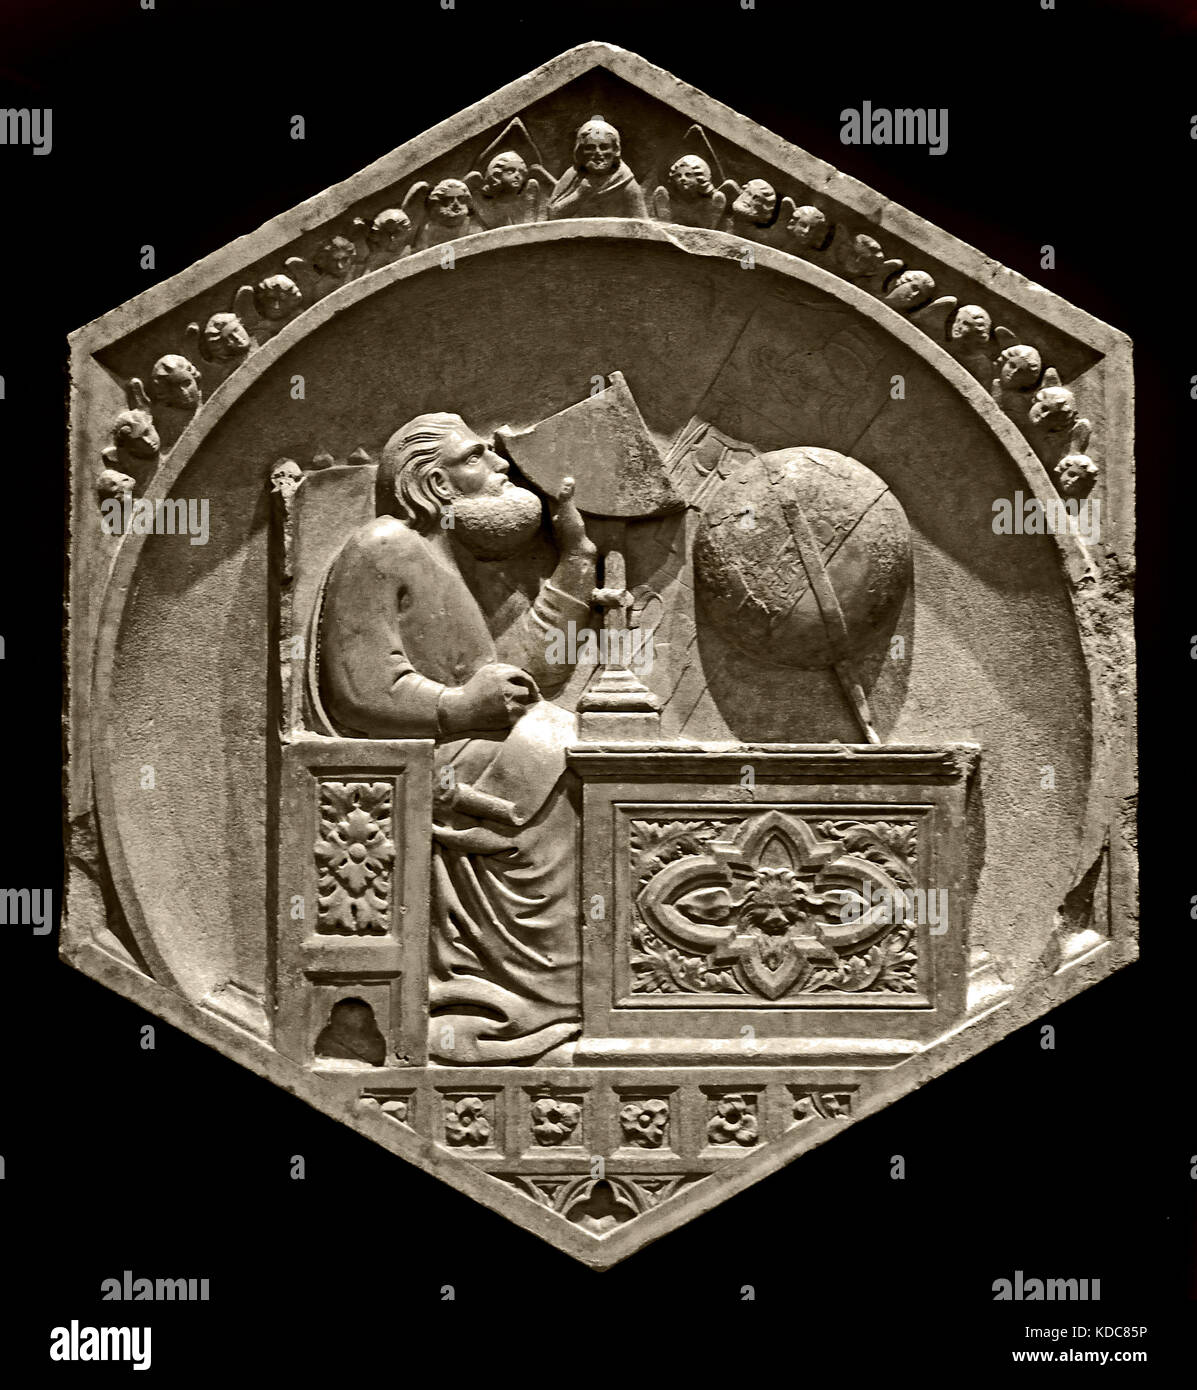 Gionitus, der Erfinder der Astronomie: Mitarbeiter von Andrea Pisano (Master der Rüstung), 1334-1336. Pisano 1290-1348 ist Architekt und Bildhauer Workshop begann etwa 1336 mit den Reliefs für die Campanile (die Kathedrale von Santa Maria del Fiore in Florenz) 1336 Florenz Italien (Museo dell'Opera del Duomo) Stockfoto